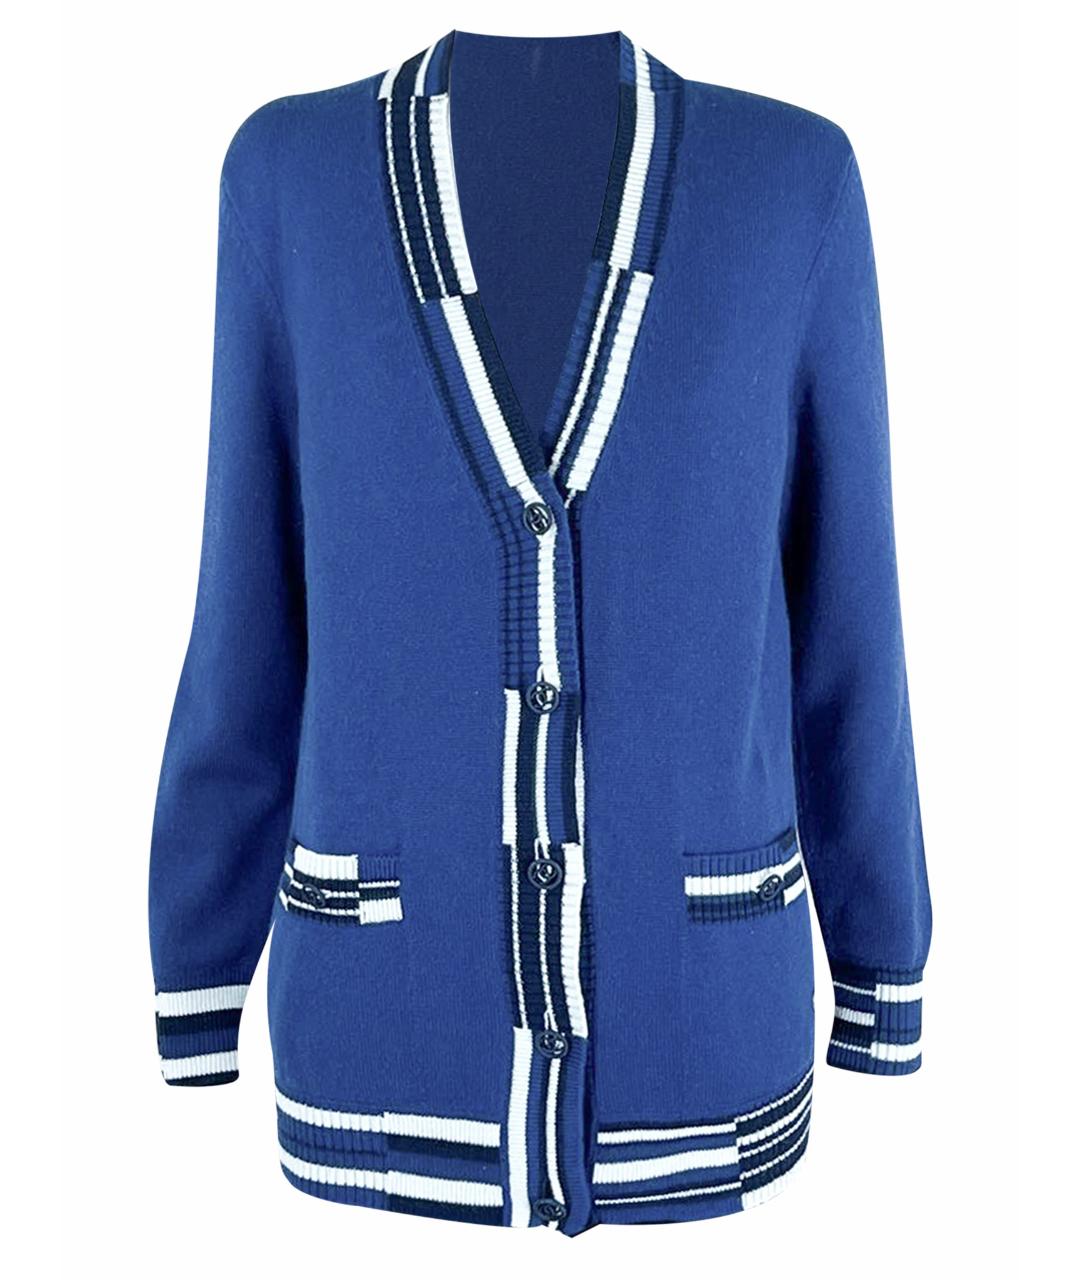 CHANEL PRE-OWNED Синий кашемировый жакет/пиджак, фото 1